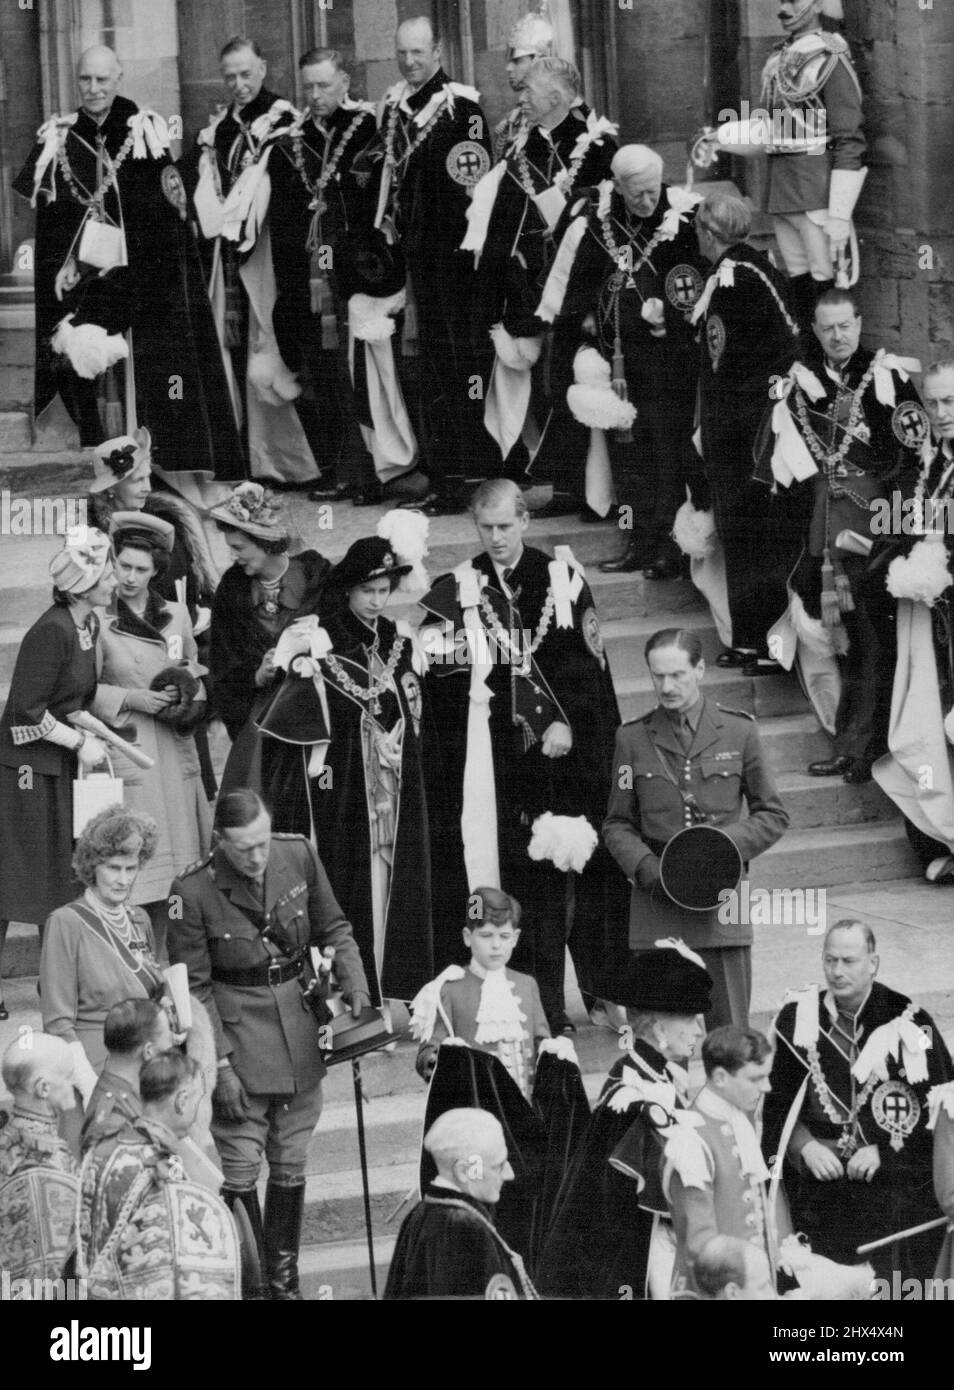 La principessa e il duca lasciano St. George -- sua altezza reale la principessa Elisabetta e suo marito, il duca di Edimburgo, hanno vagato come cavalieri del garter, visto lasciare la cappella di St. George dopo la cerimonia oggi 23 aprile. In fondo alla foto si trova la Regina Maria scortata dal Duca di Gloucester (a destra). Dietro la principessa Elisabetta si trovano (da sinistra a destra) la duchessa di Gloucester, la principessa Margaret e la duchessa di Kent. Tra i Cavalieri che fiancheggiano i gradini ci sono il Conte di Athlone (in alto a sinistra); il Duca di Norfolk (terzo da sinistra); e il Visconte Maresciallo di campo Alexander (estrema destra). Una brillante cerimonia ha preso plac Foto Stock